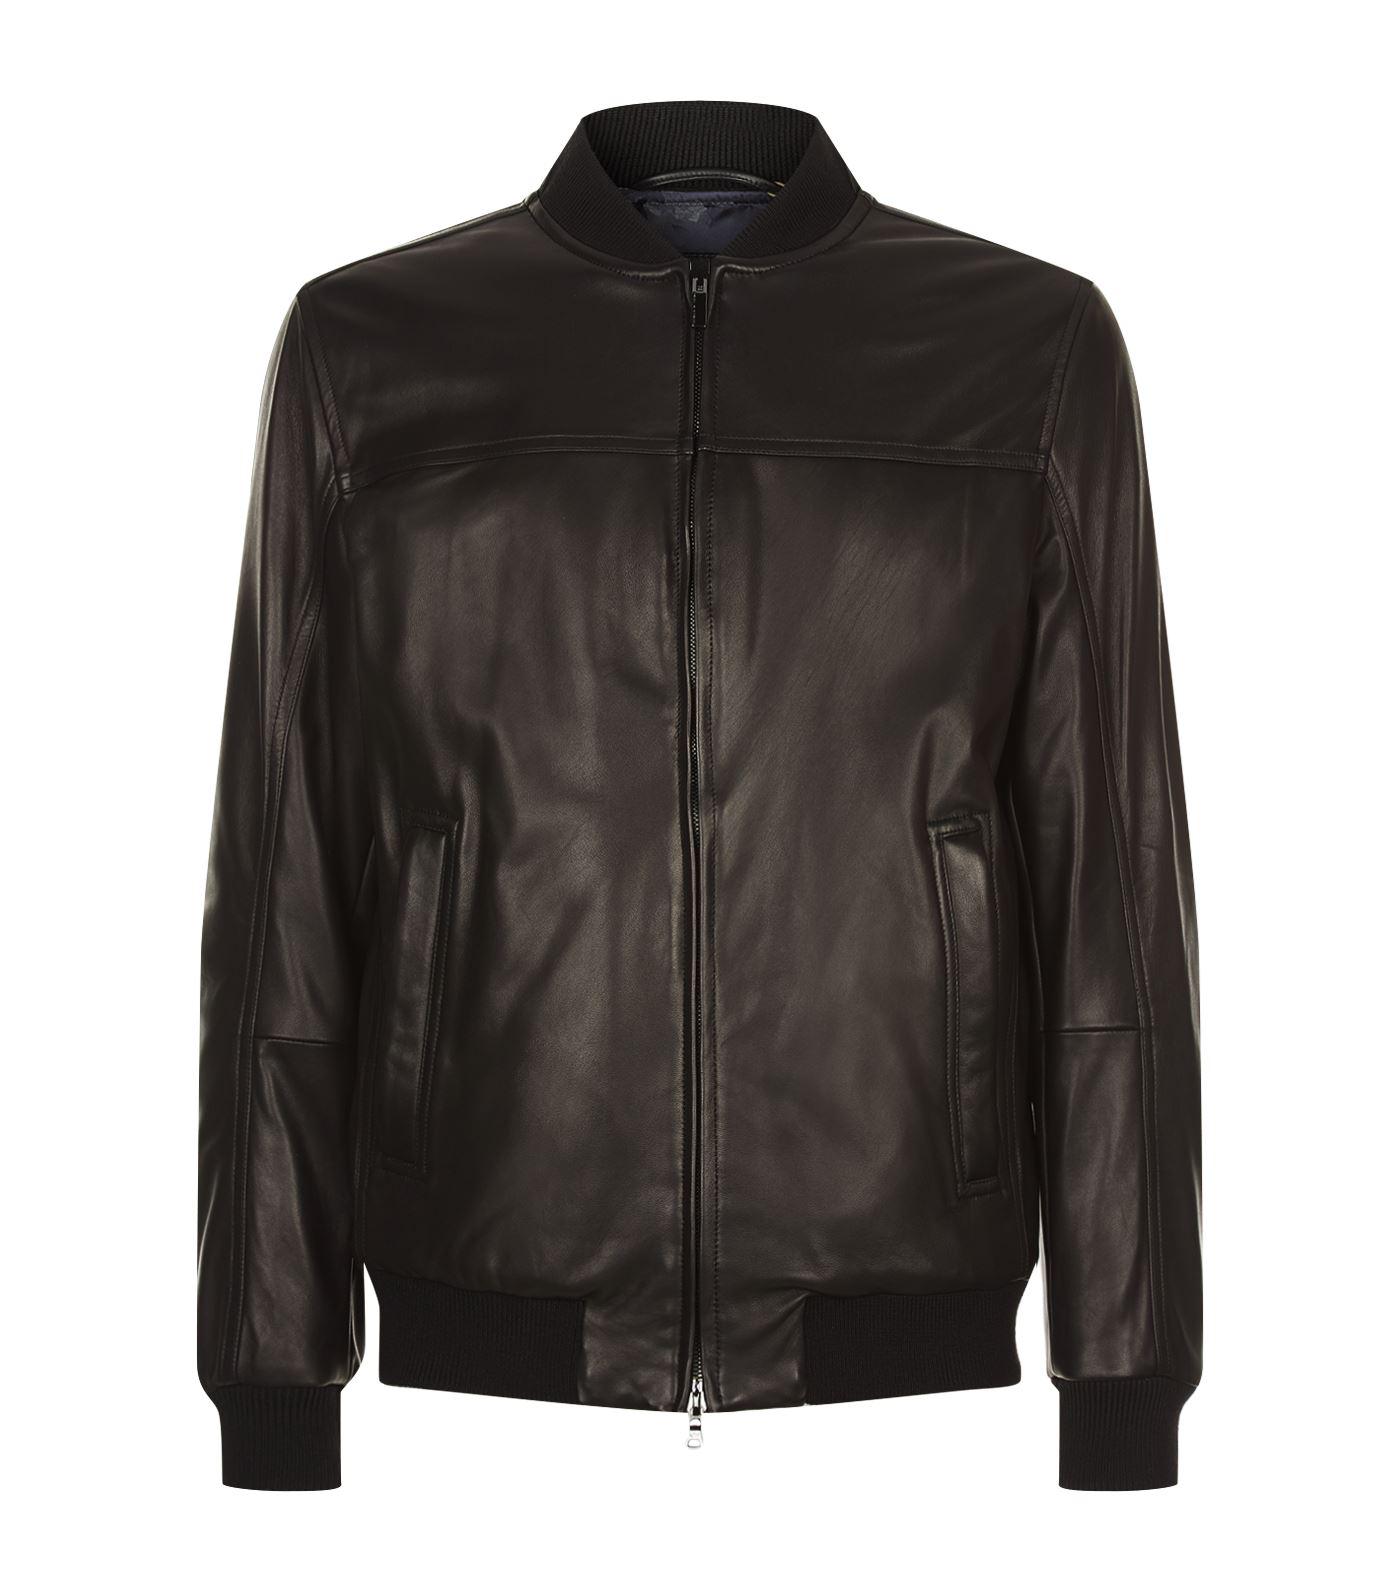 Paul & Shark Leather Bomber Jacket in Black for Men - Lyst